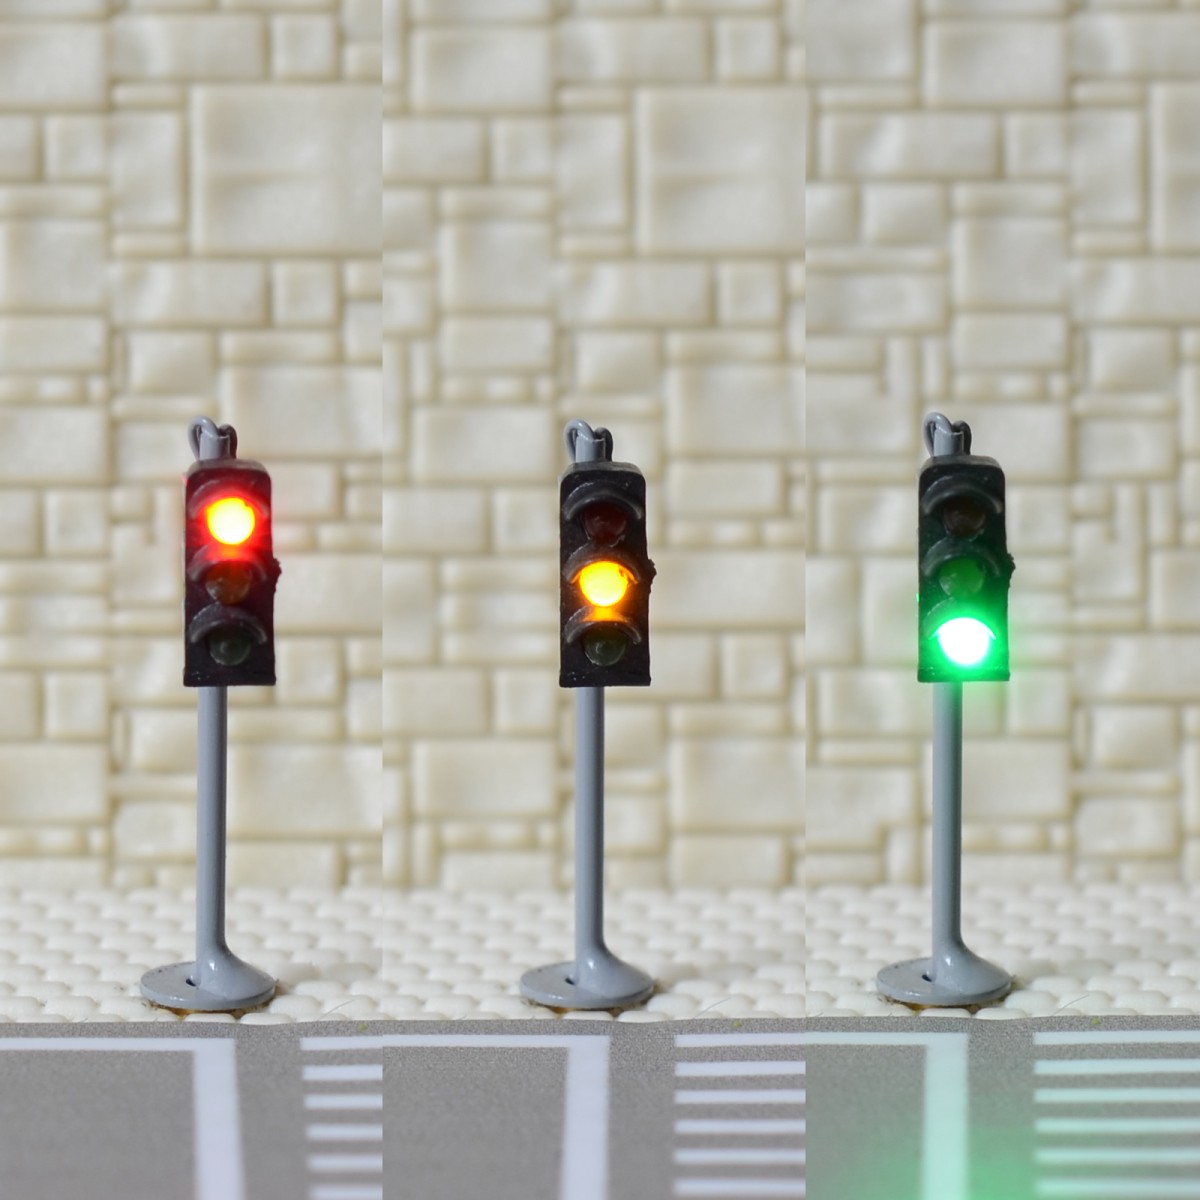 1 x traffic signal light N scale model railroad crossing walk pedestrian #GR3N 